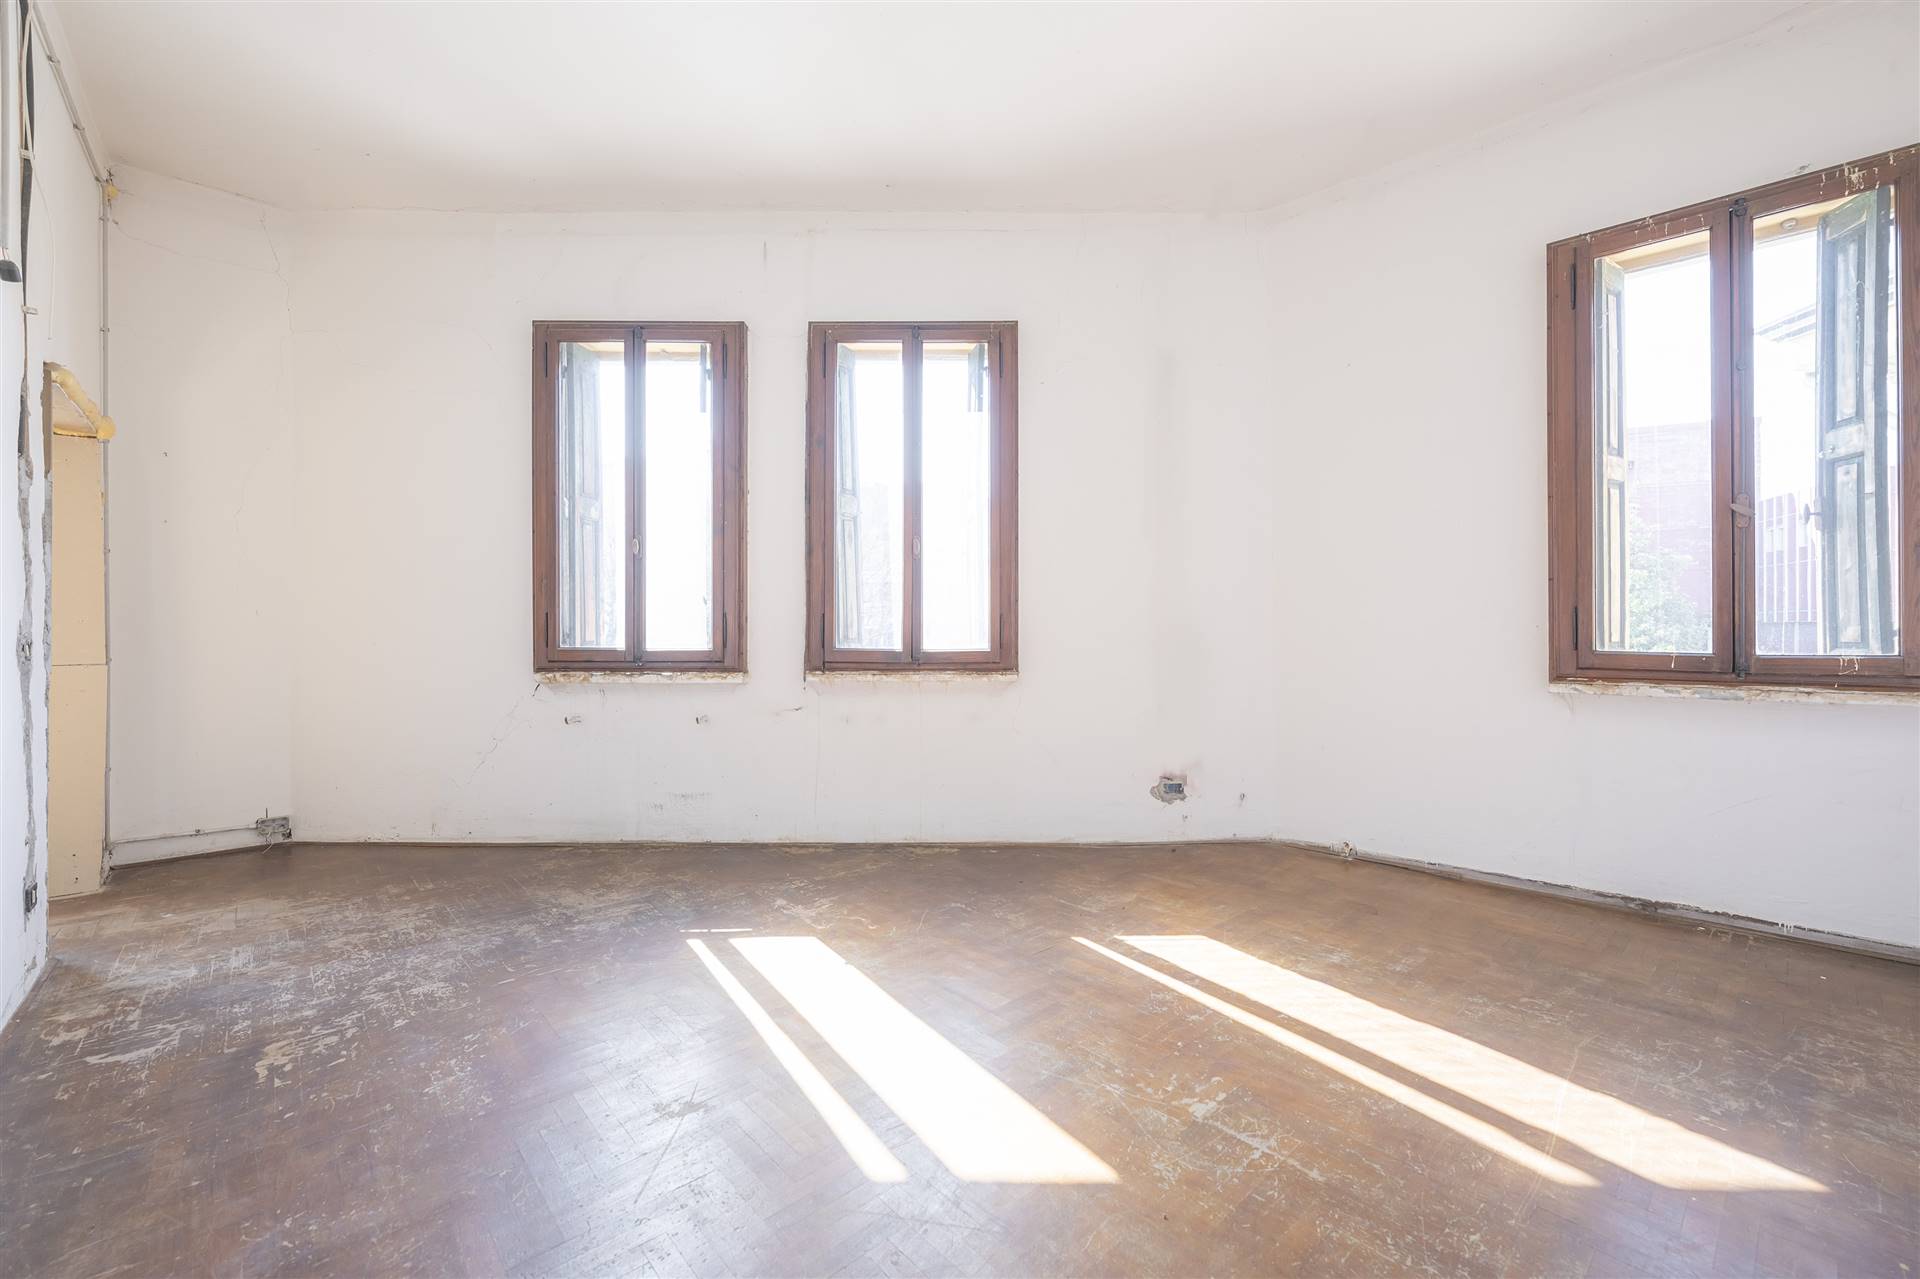 Appartamento in vendita a San Donà di Piave, 4 locali, prezzo € 85.000 | CambioCasa.it